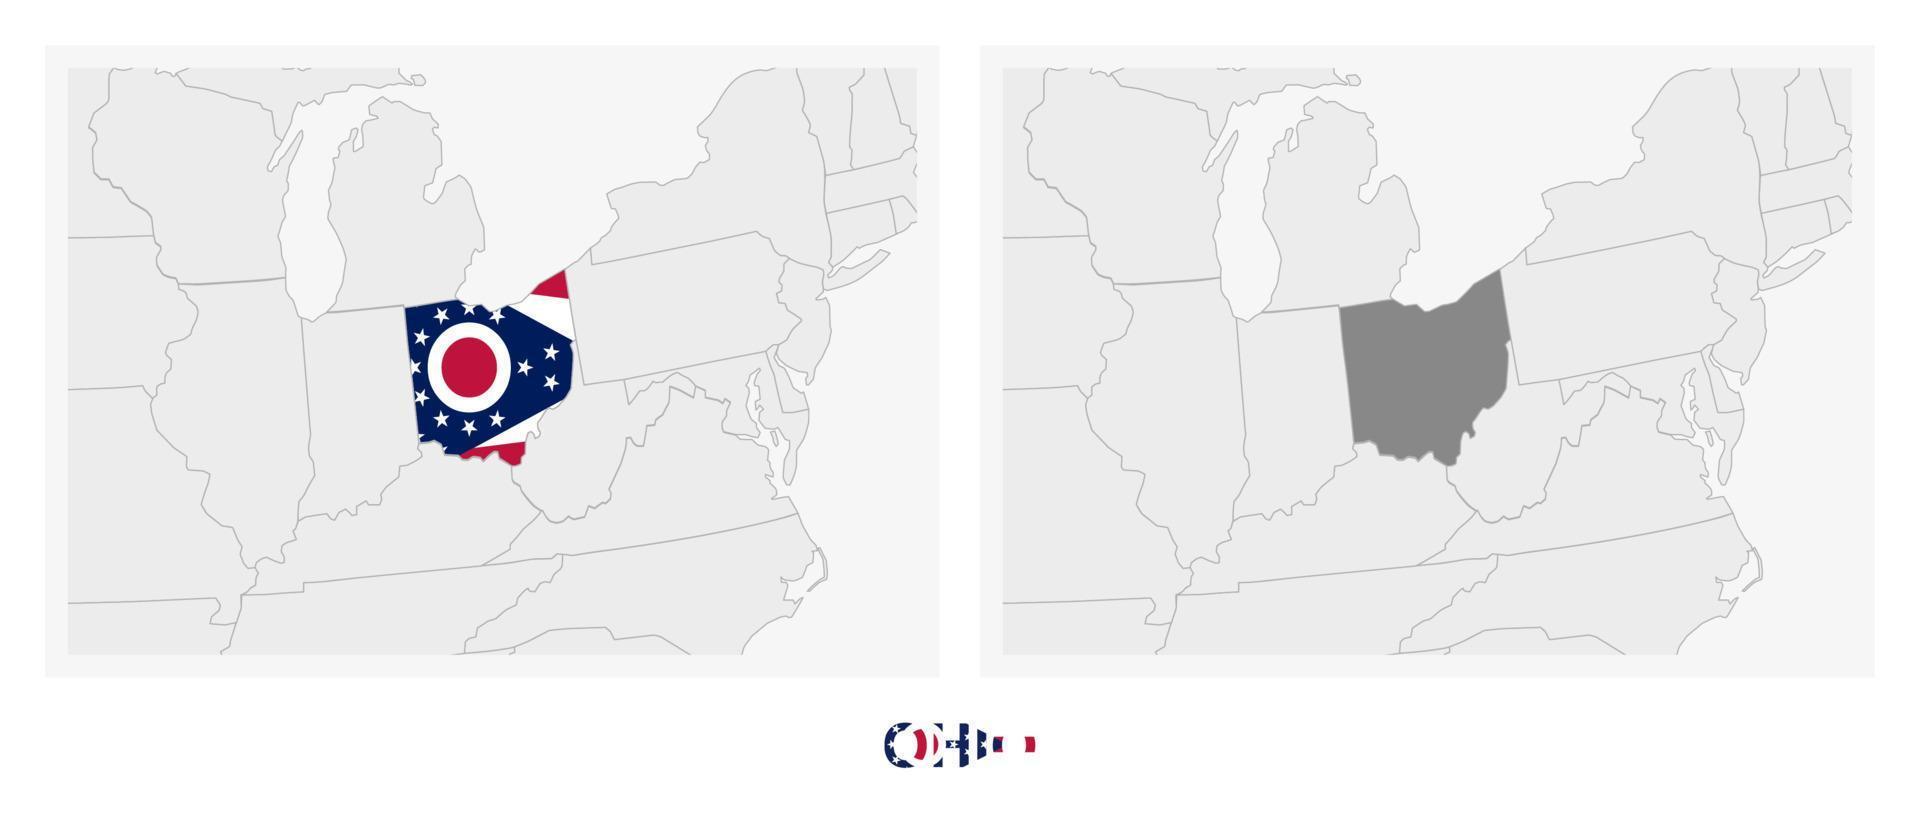 zwei versionen der karte des us-staates ohio, mit der flagge von ohio und dunkelgrau hervorgehoben. vektor